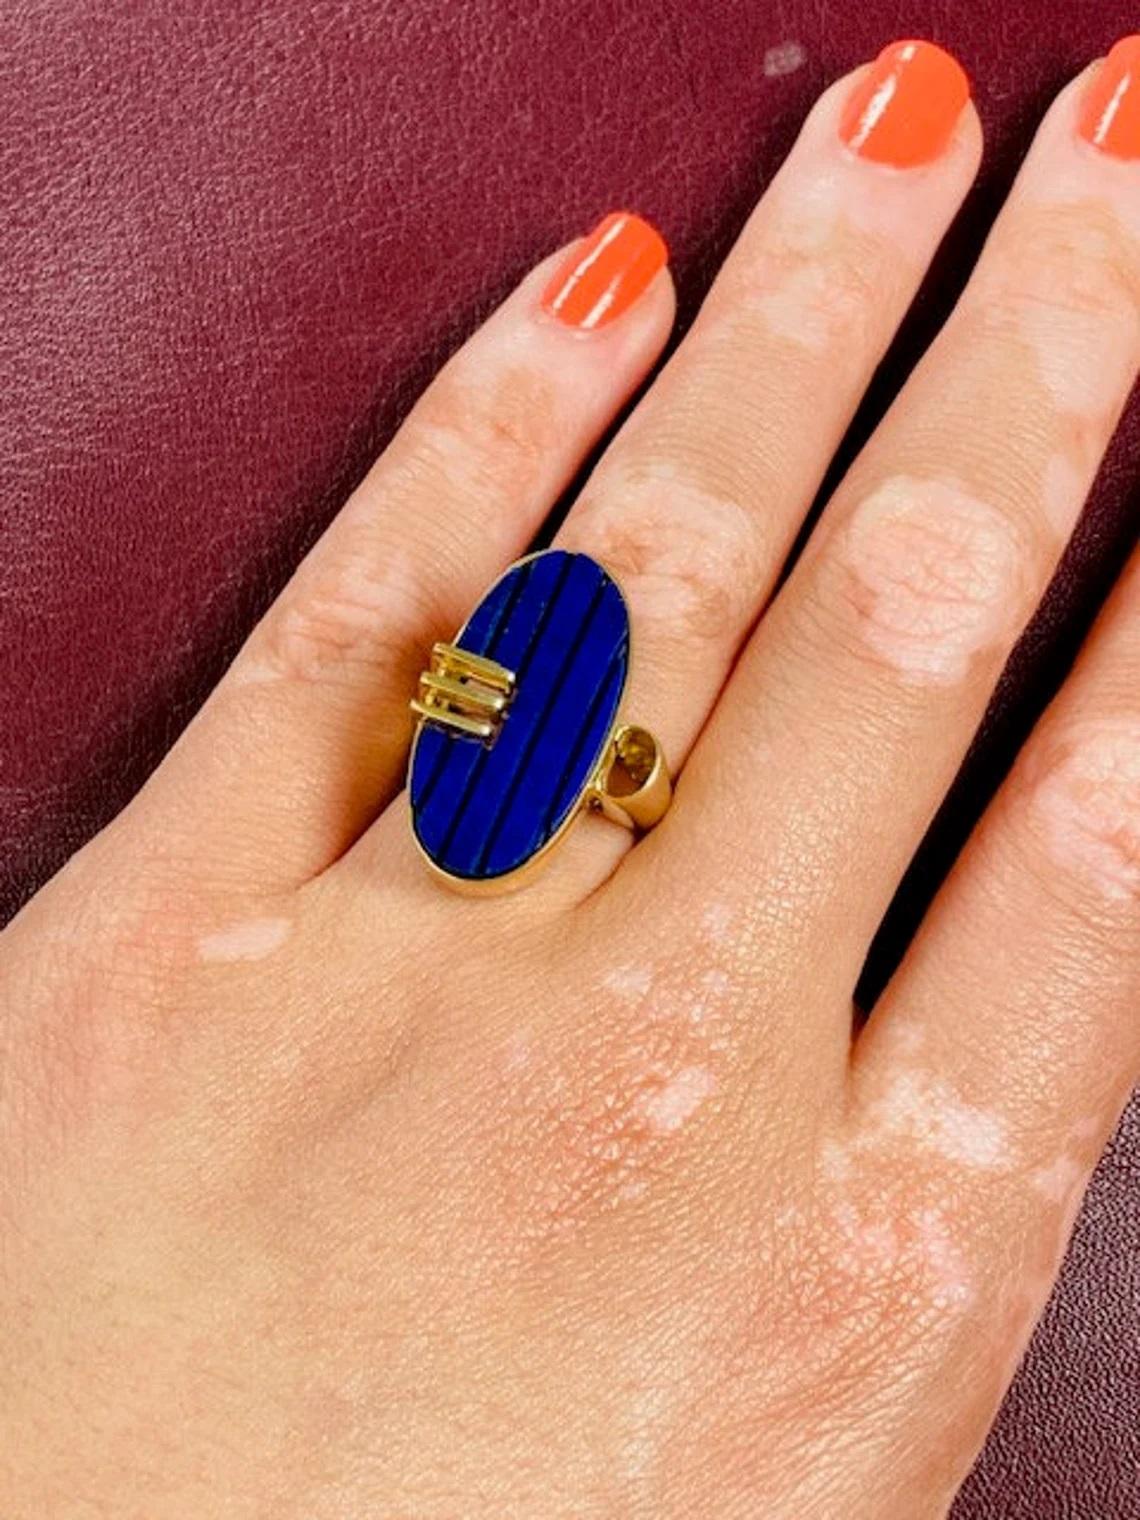 Vintage 14k Gold Lapis Lazuli Oval Ring One-of-a-kind

Dieser auffällige Ring ist perfekt, um jedem Look einen farblichen Akzent zu verleihen. Der auffällige Lapislazuli wird durch das 14-karätige Gelbgold wunderschön ergänzt, und dieses Stück ist